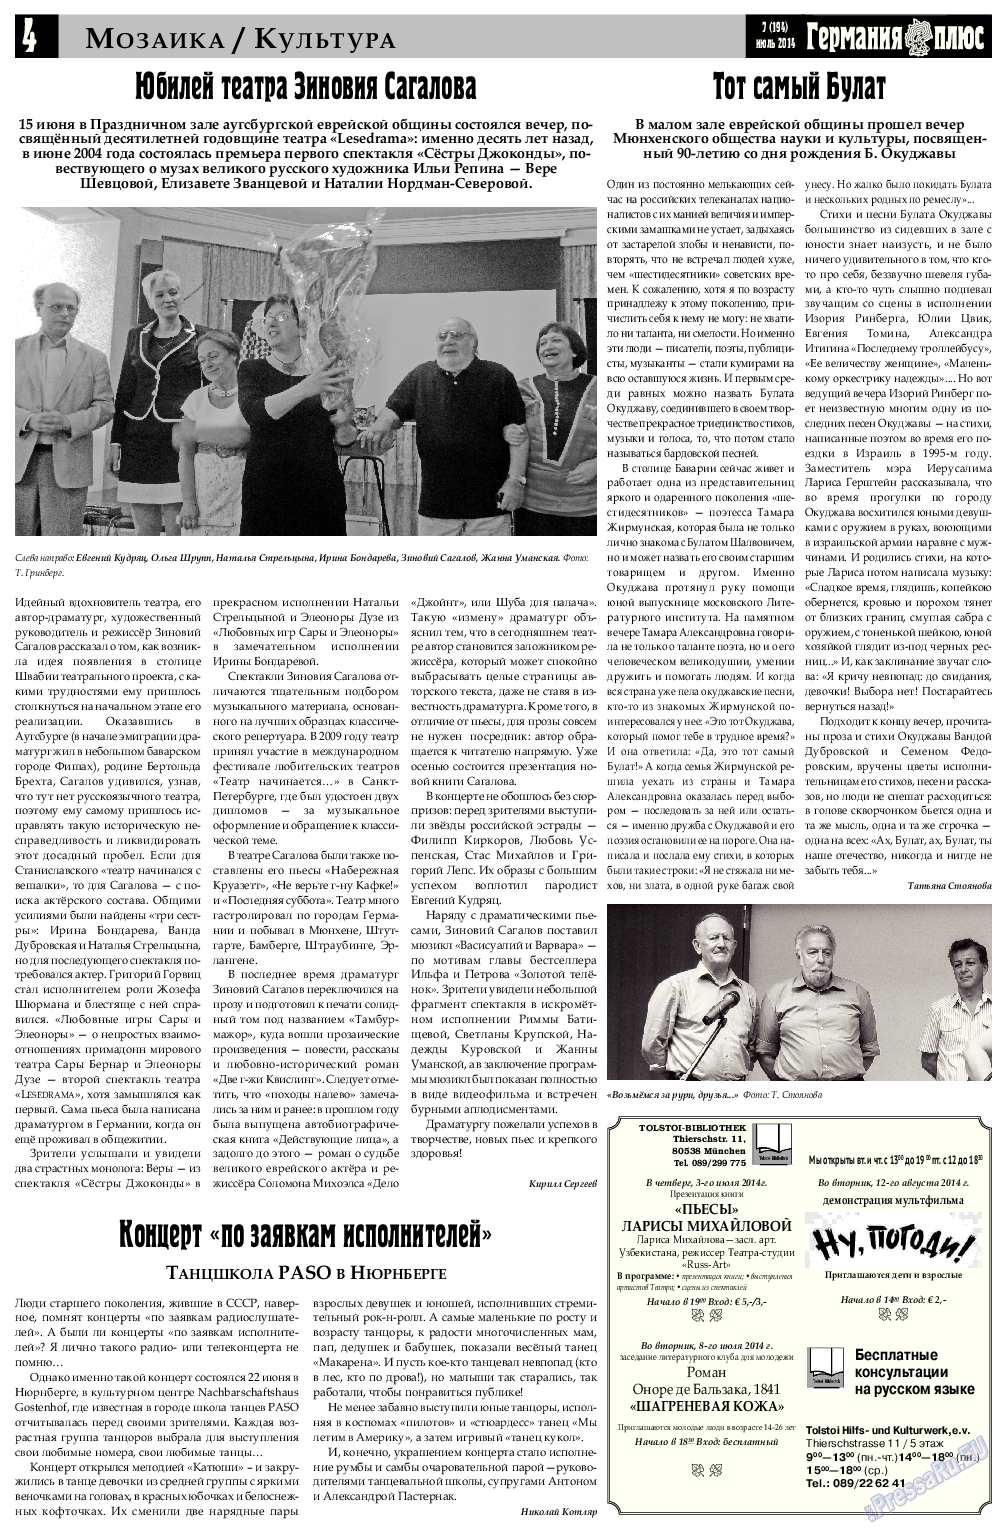 Германия плюс (газета). 2014 год, номер 7, стр. 4